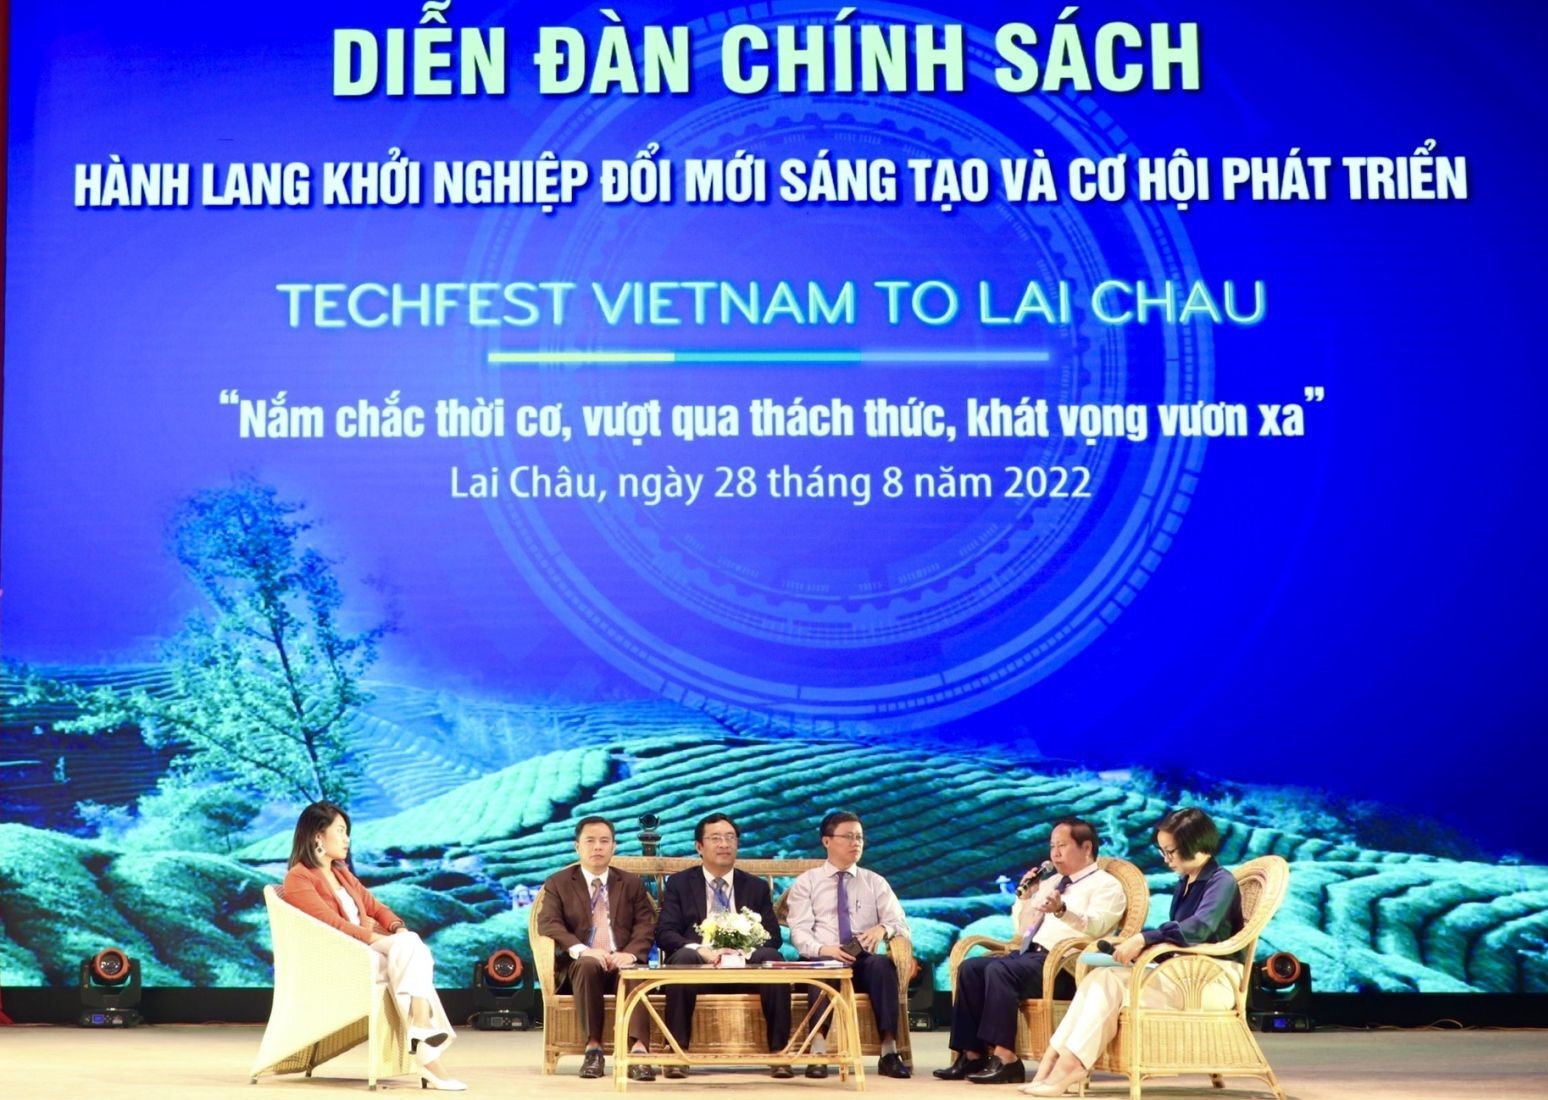 Diễn đàn chính sách Hành lang Khởi nghiệp đổi mới sáng tạo và cơ hội phát triển được tổ chức trong khuôn khổ Ngày hội Khởi nghiệp đổi mới sáng tạo Việt Nam 2022 tại Lai Châu.